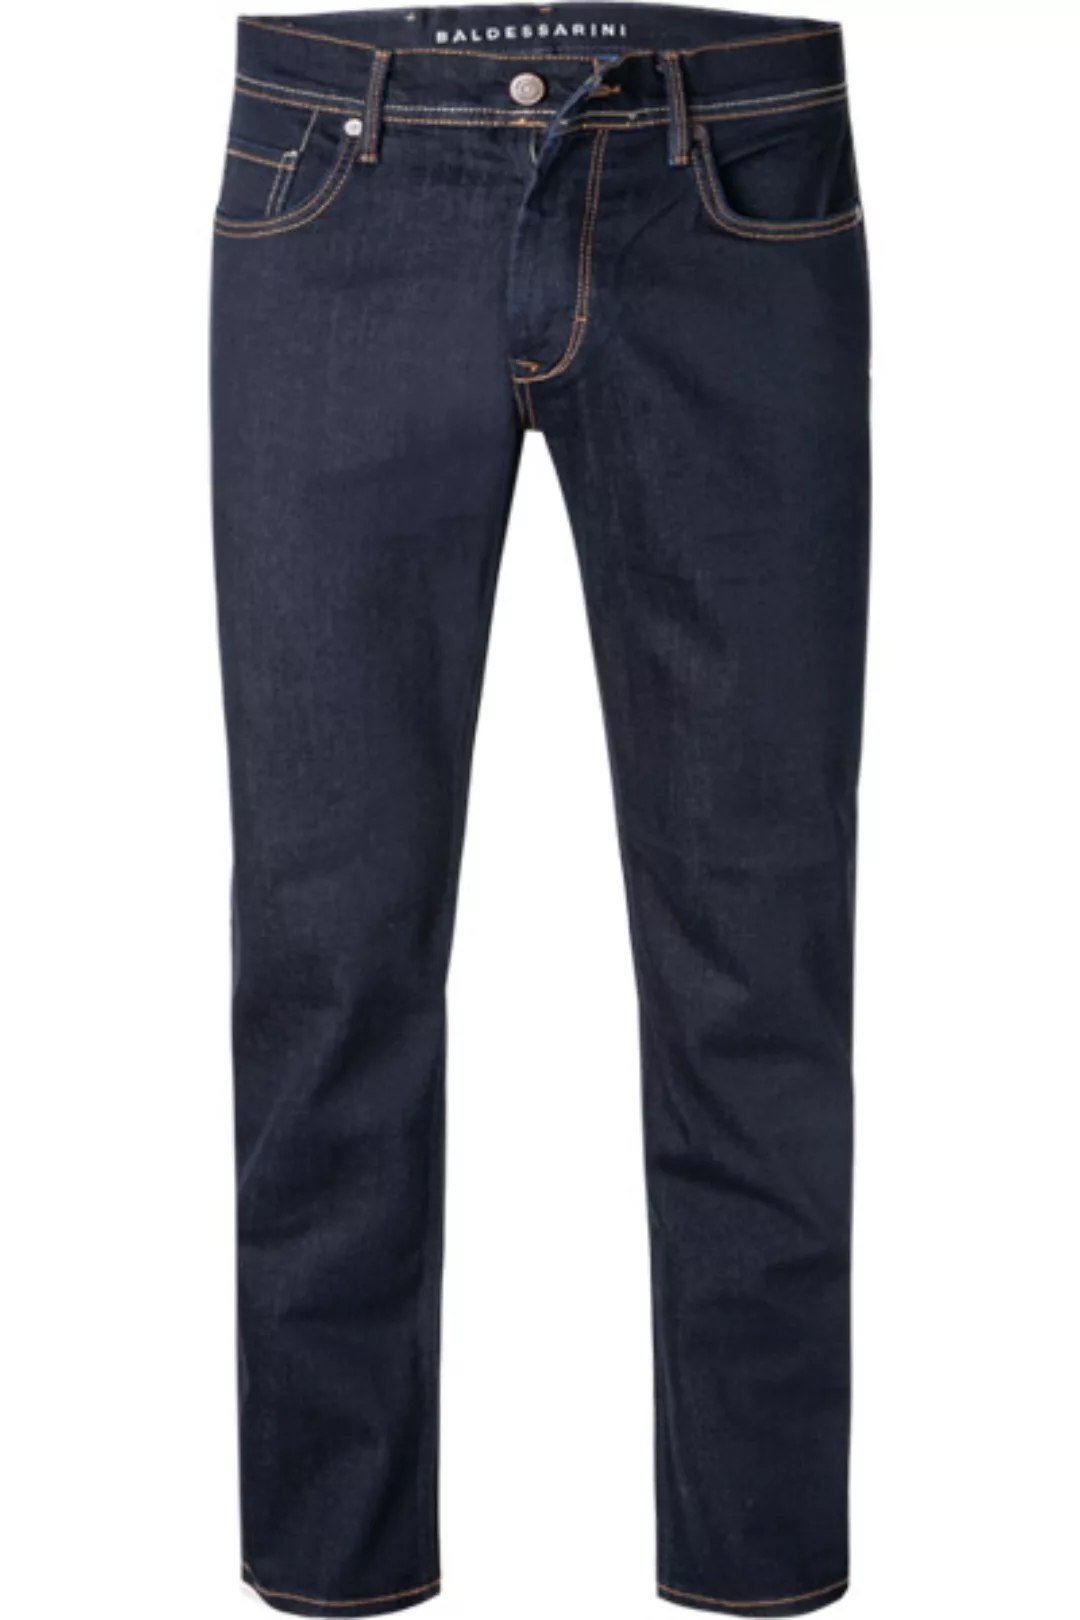 BALDESSARINI Jeans nachtblau B1 16502.1466/6810 günstig online kaufen